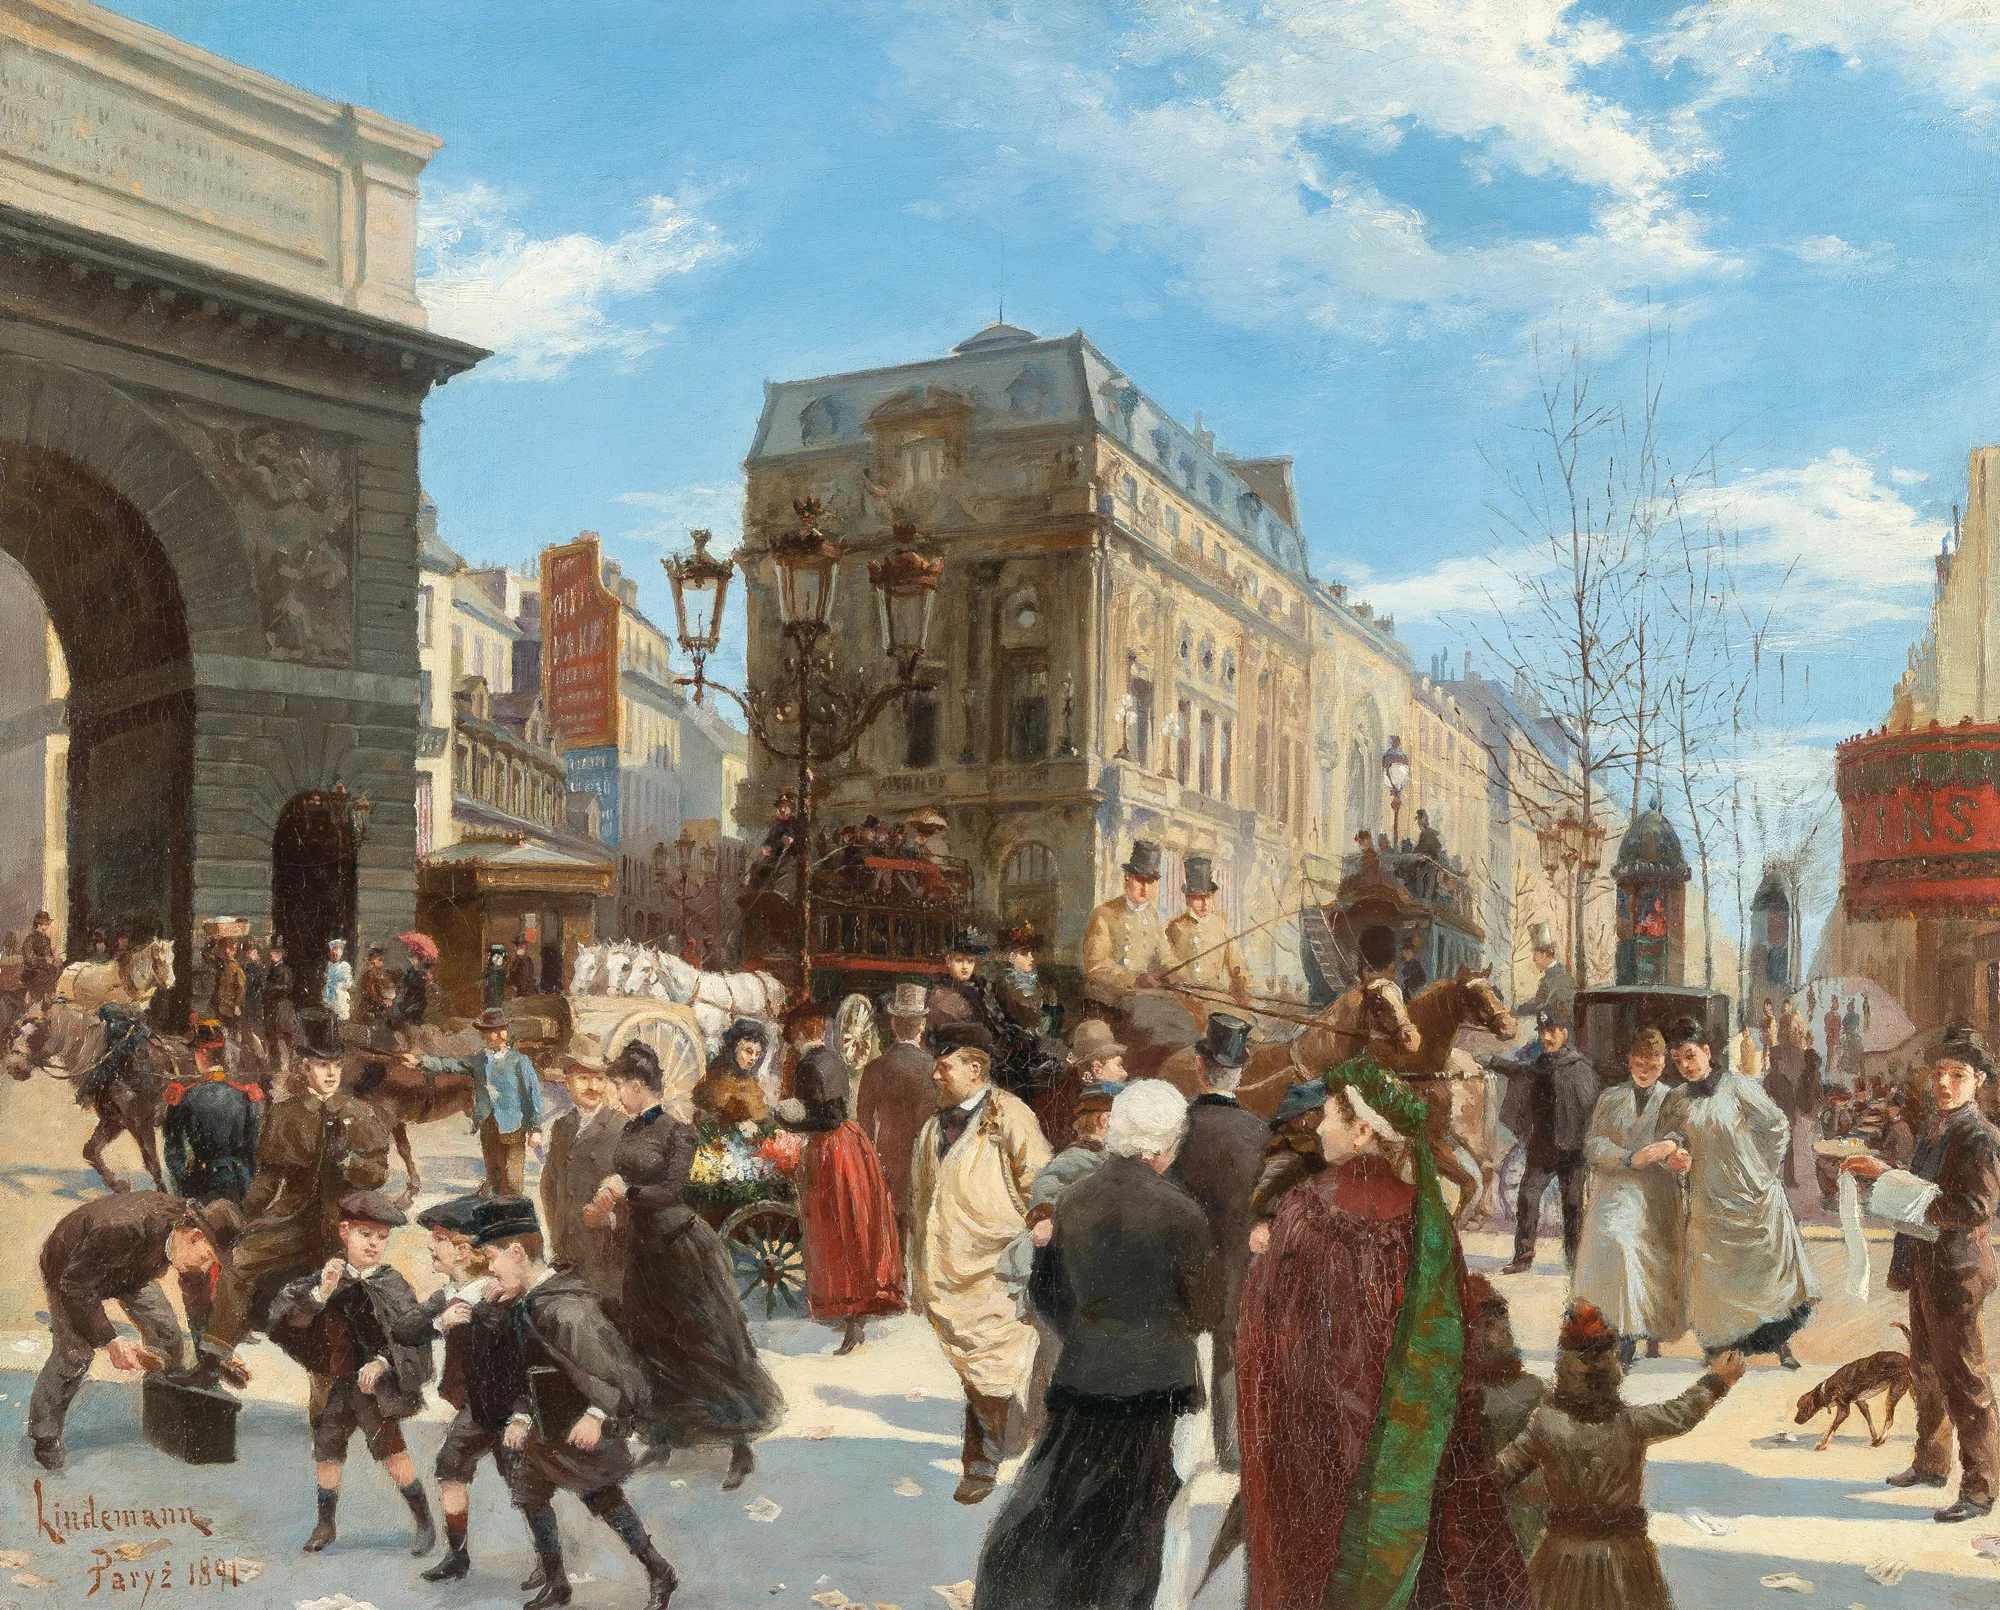 Manfred Lindemann-Frommel, Scène de rue parisienne près de la Porte Saint-Martin, 1891, huile sur toile, 73,5 x 59 cm (collection privée).